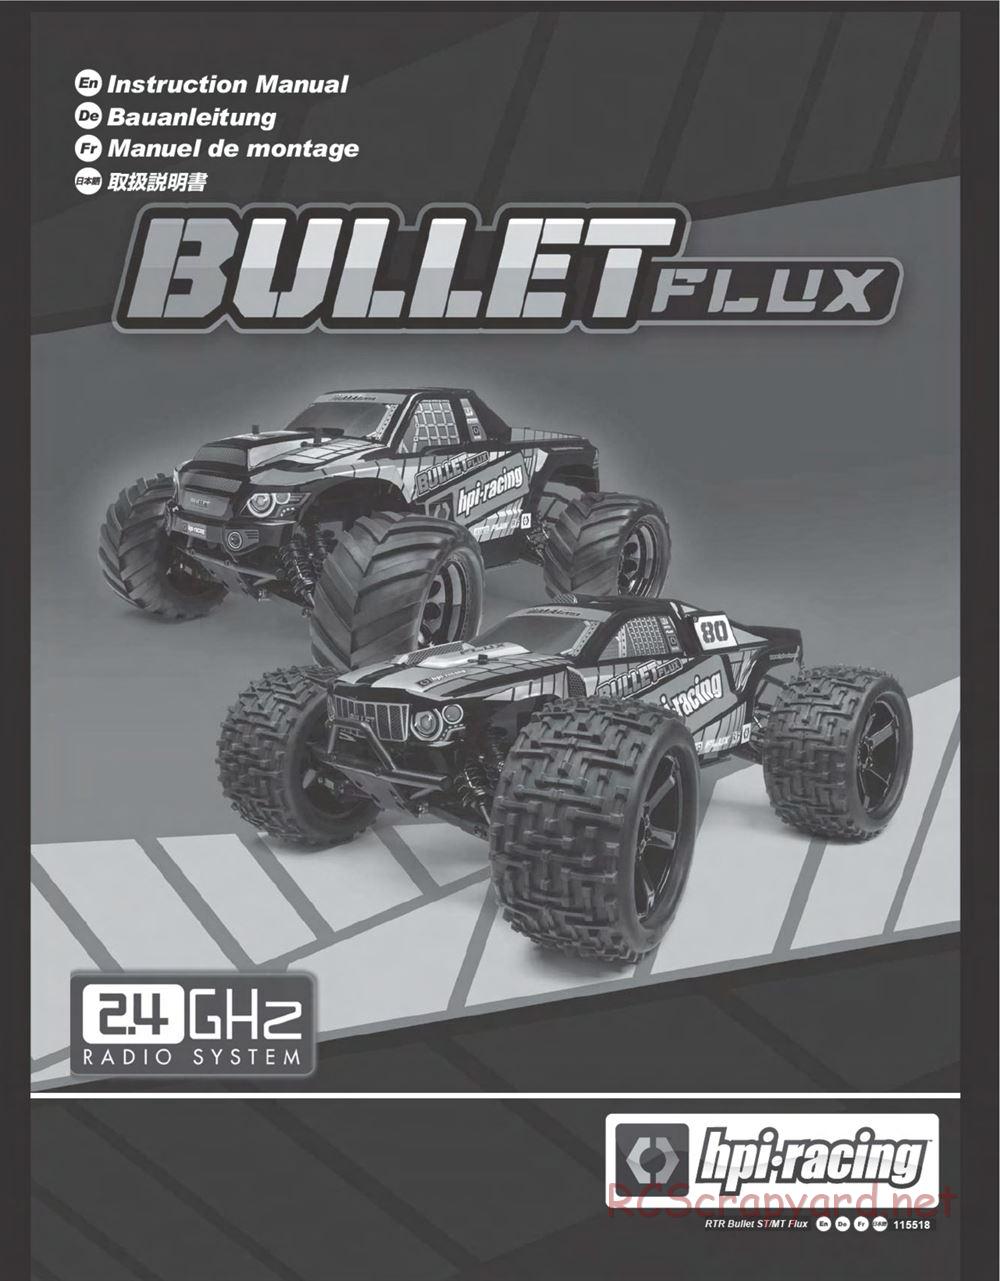 HPI - Bullet ST Flux - Manual - Page 1